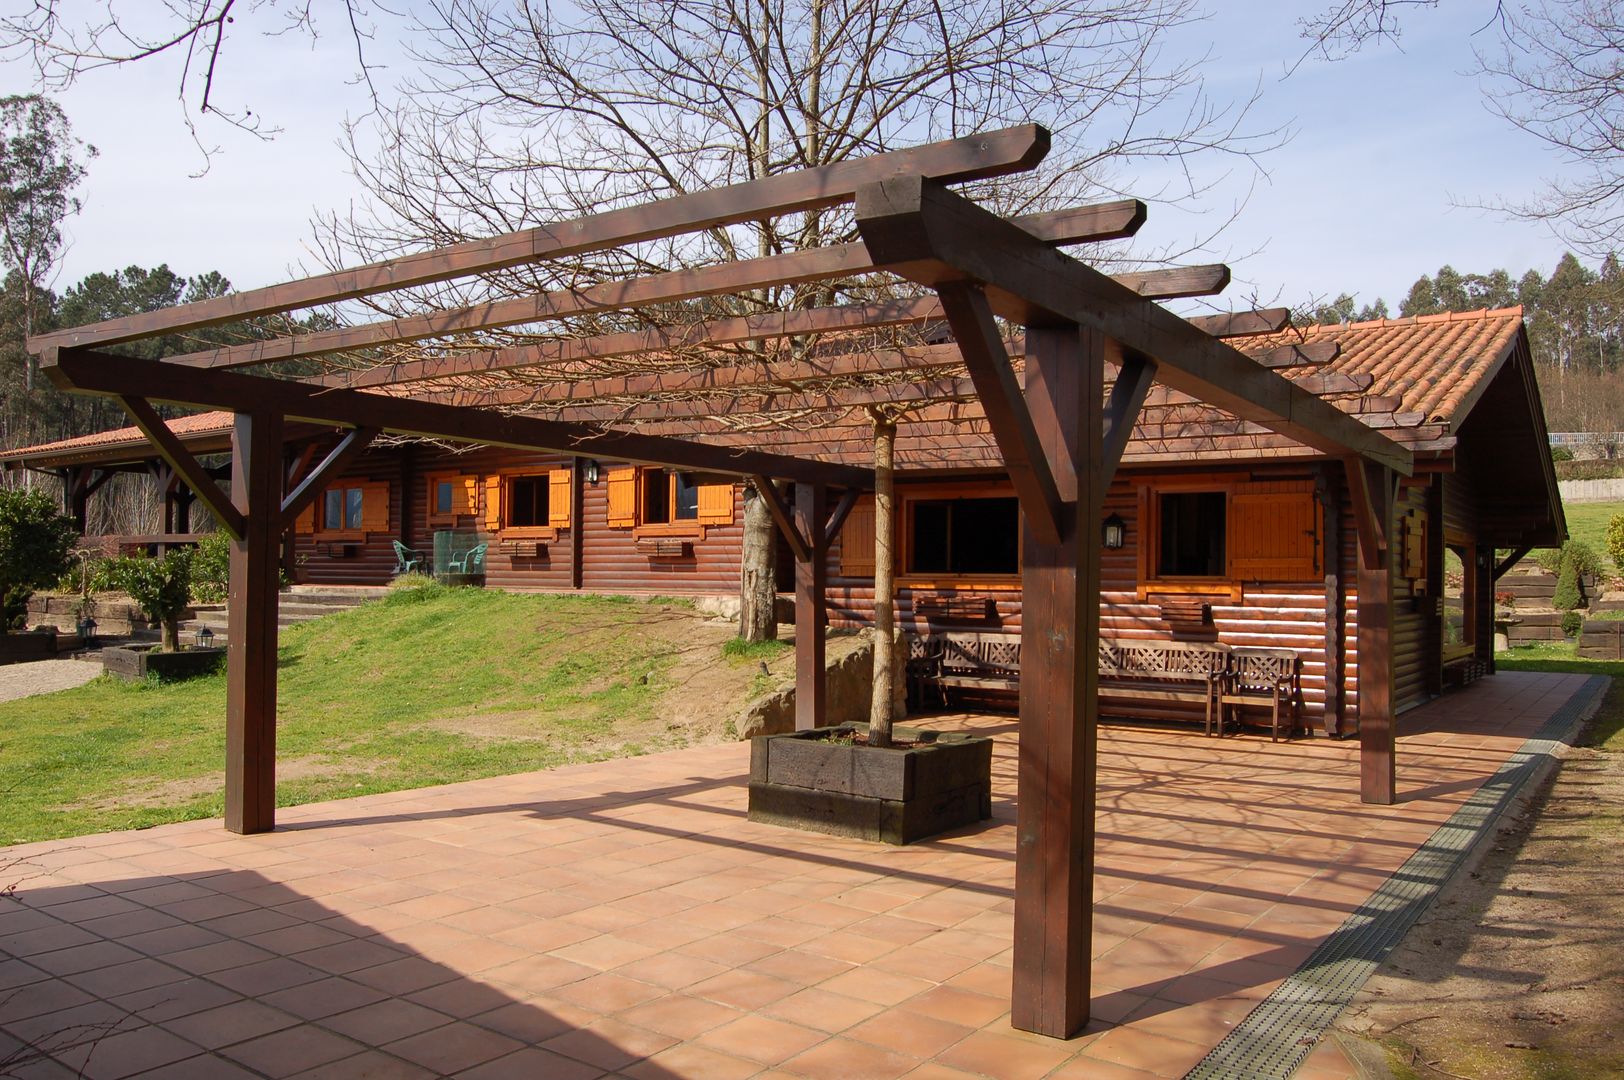 RUSTICASA | Casa rústica | Pontevedra, RUSTICASA RUSTICASA Деревянные дома Твердая древесина Многоцветный